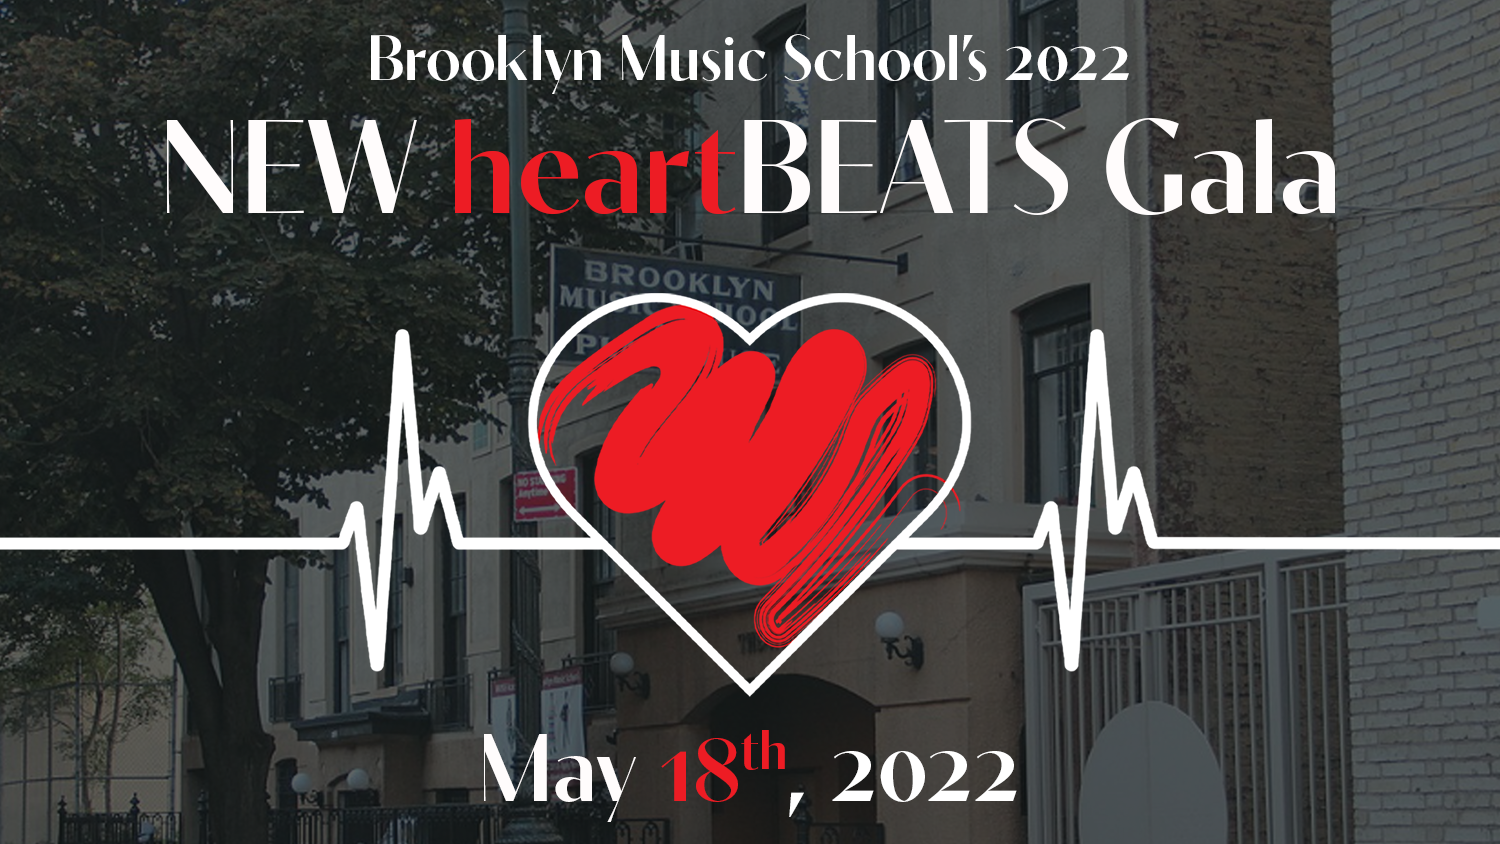 BMS New heartBEATS 2022 Gala Artwork_Newsletter.png